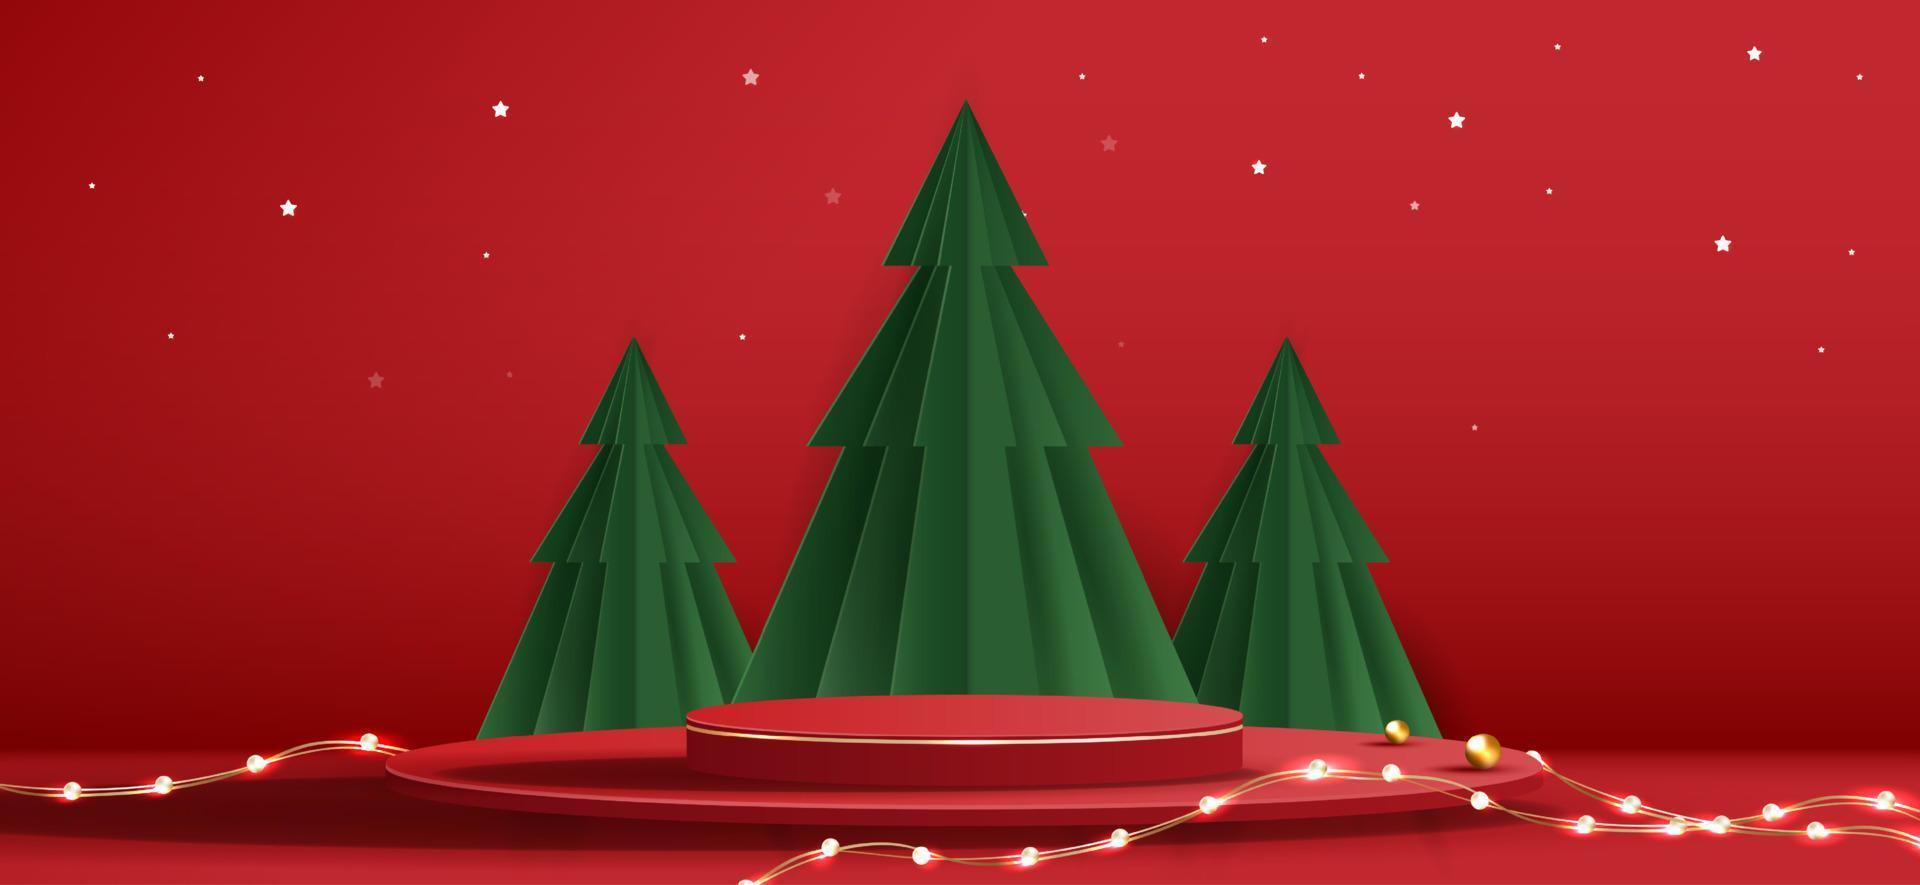 forma de pódio para exibição de produtos cosméticos para o dia de natal ou ano novo. estande a vitrine do produto em fundo vermelho com árvore de natal. projeto do vetor. vetor